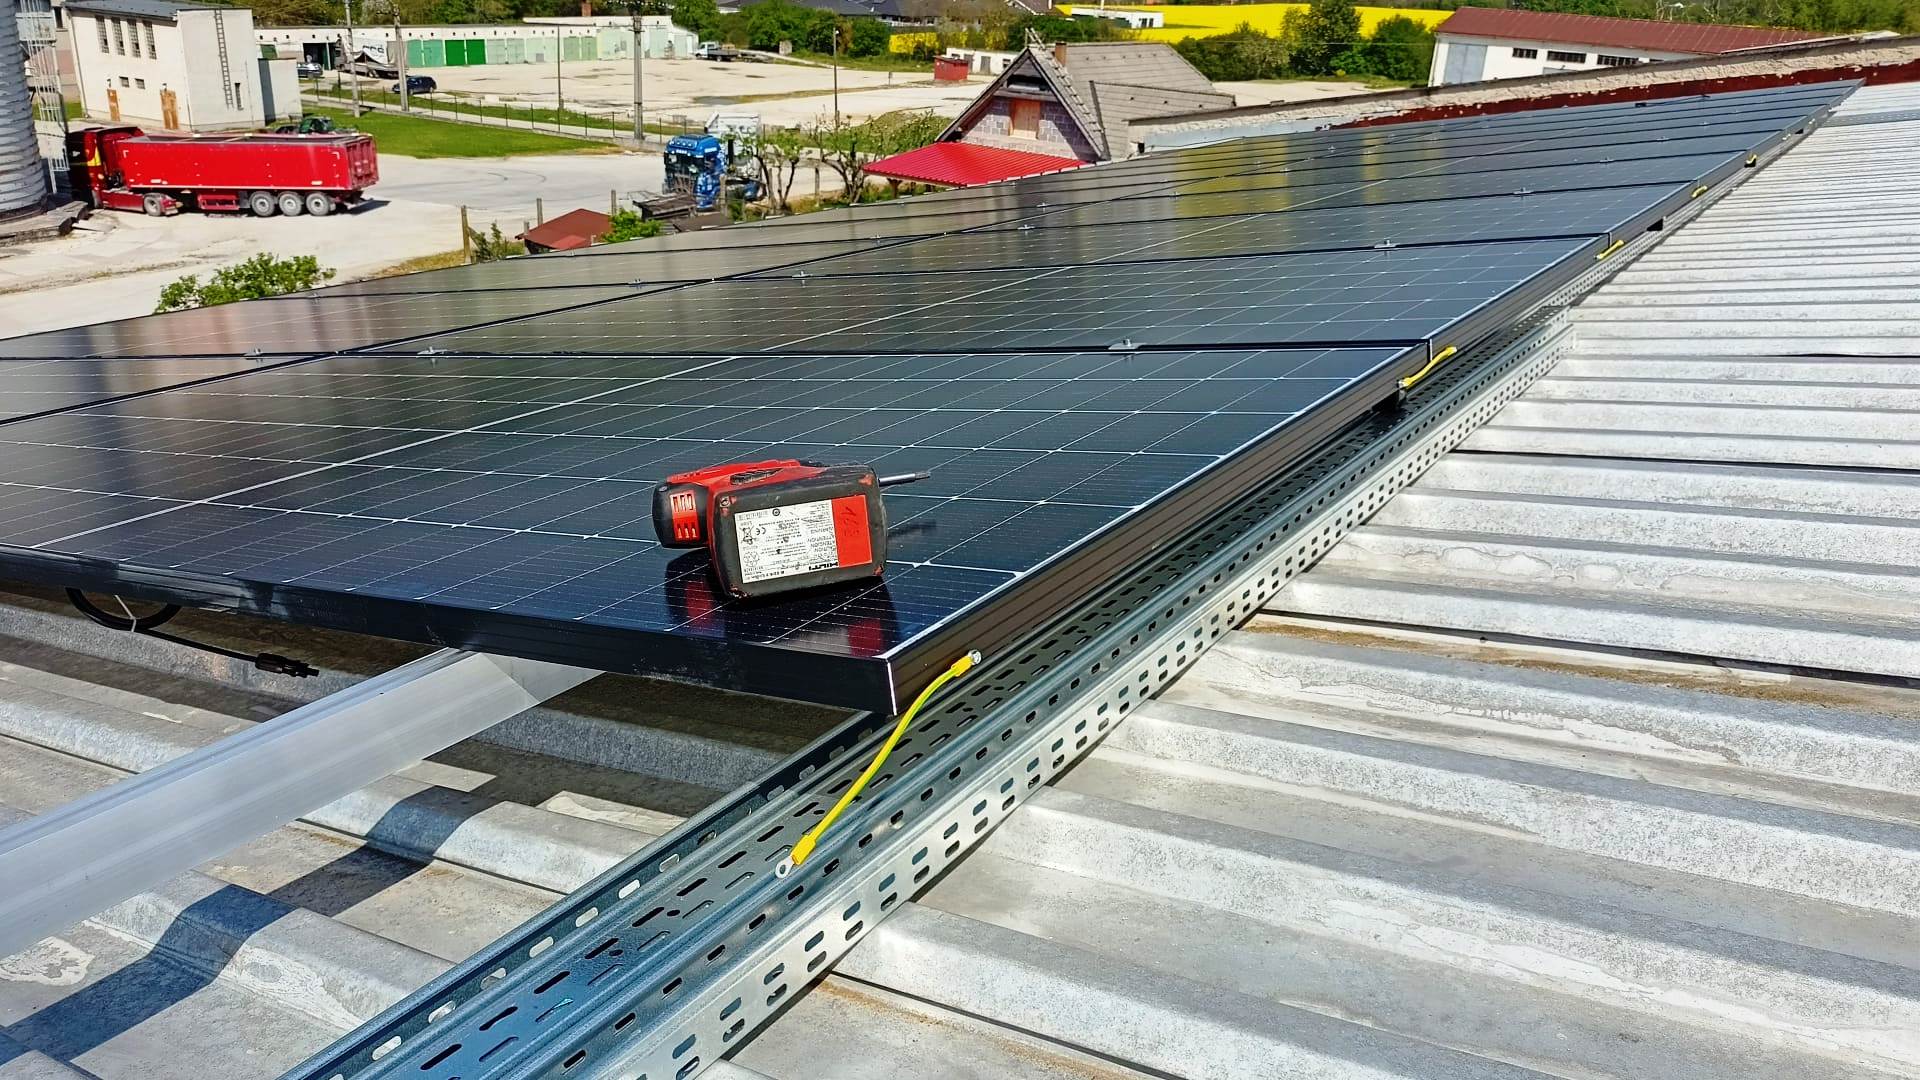 solárny panel realizácia